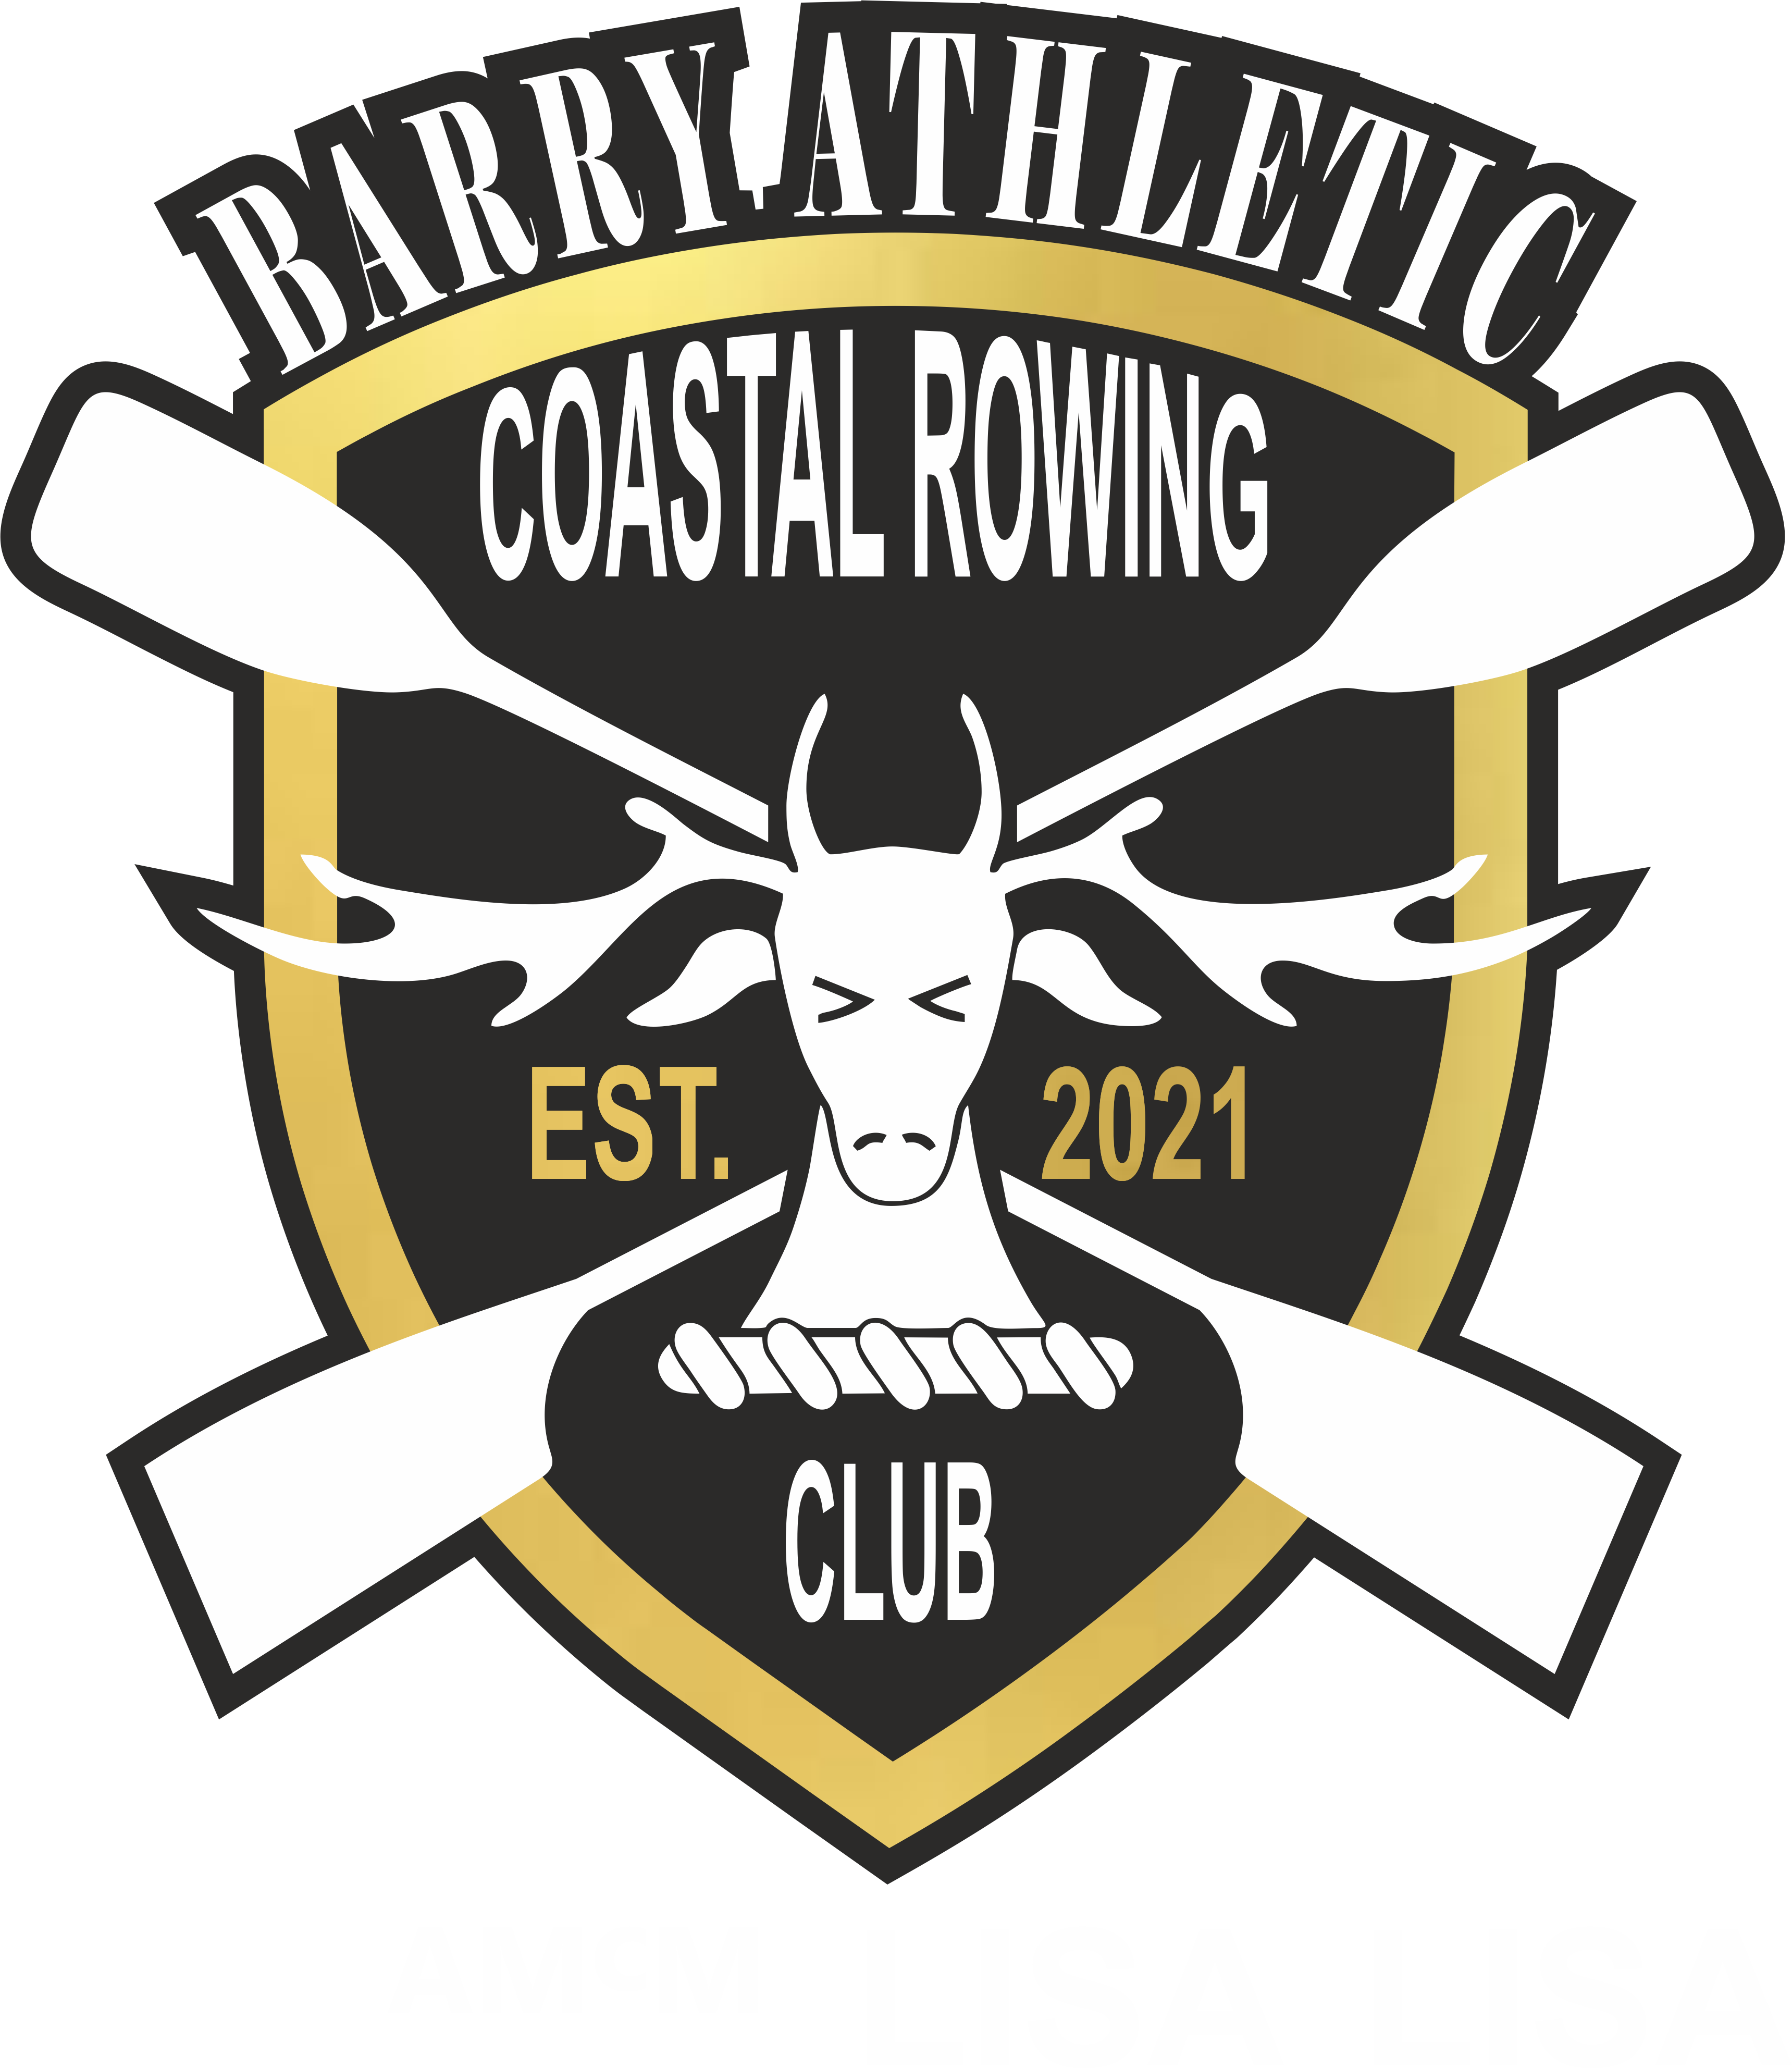 Barry Athletic Coastal Rowing Club